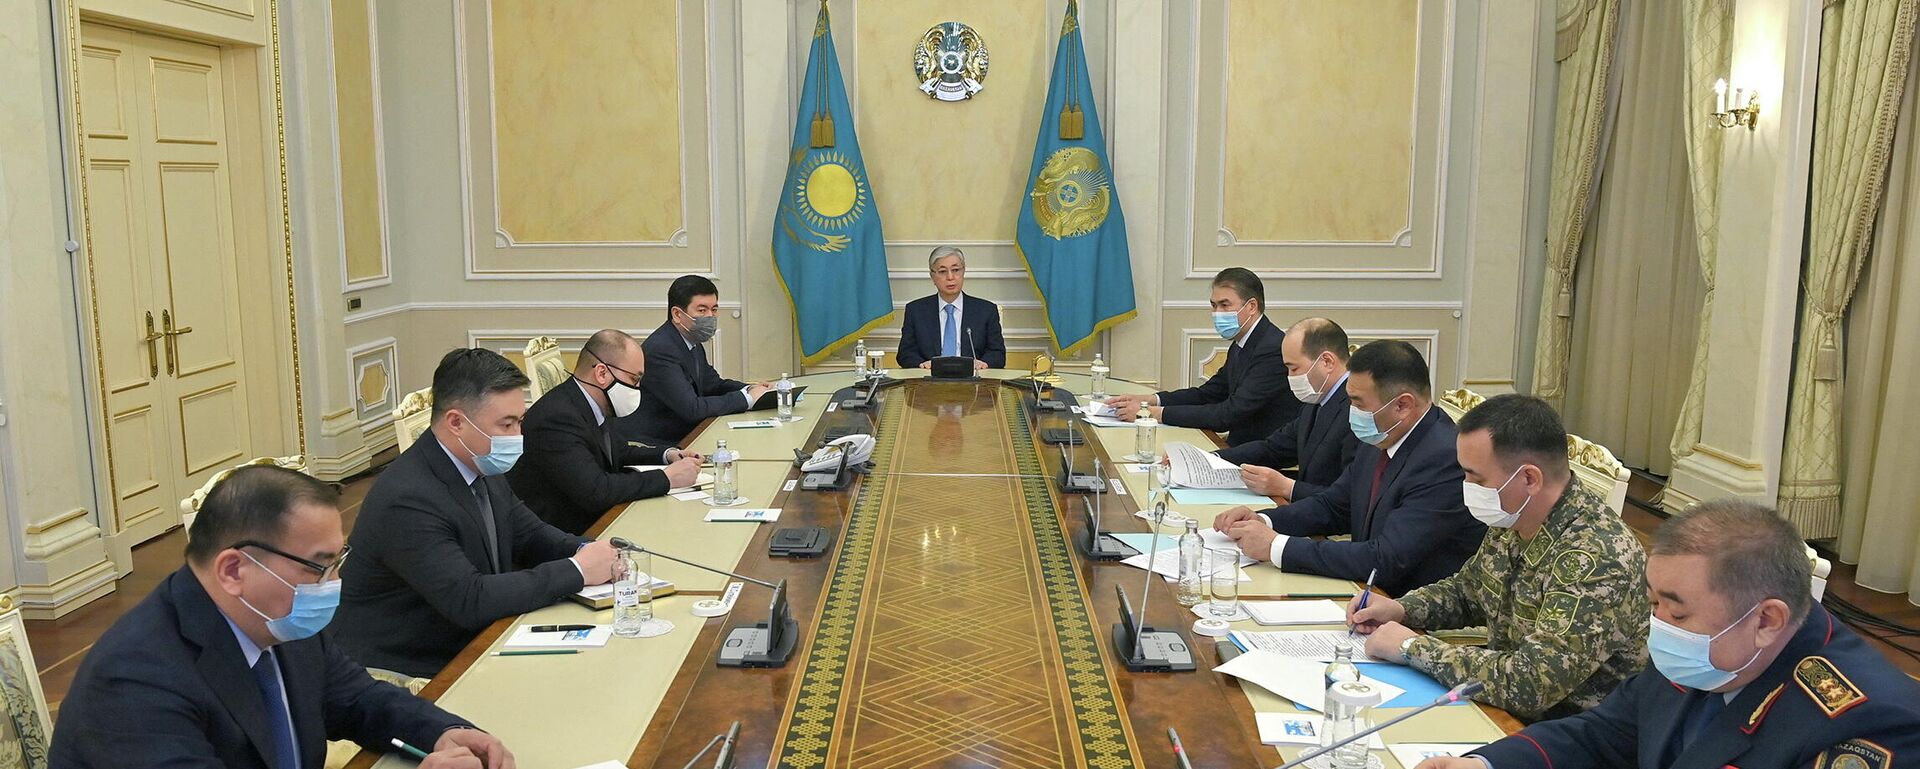 El presidente de Kazajistán, Kasim-Zhomart Tokáev, preside una reunión del Centro de Operaciones de Emergencia tras las protestas, en Nur-Sultan, Kazajistán, el 8 de enero de 2022 - Sputnik Mundo, 1920, 08.01.2022